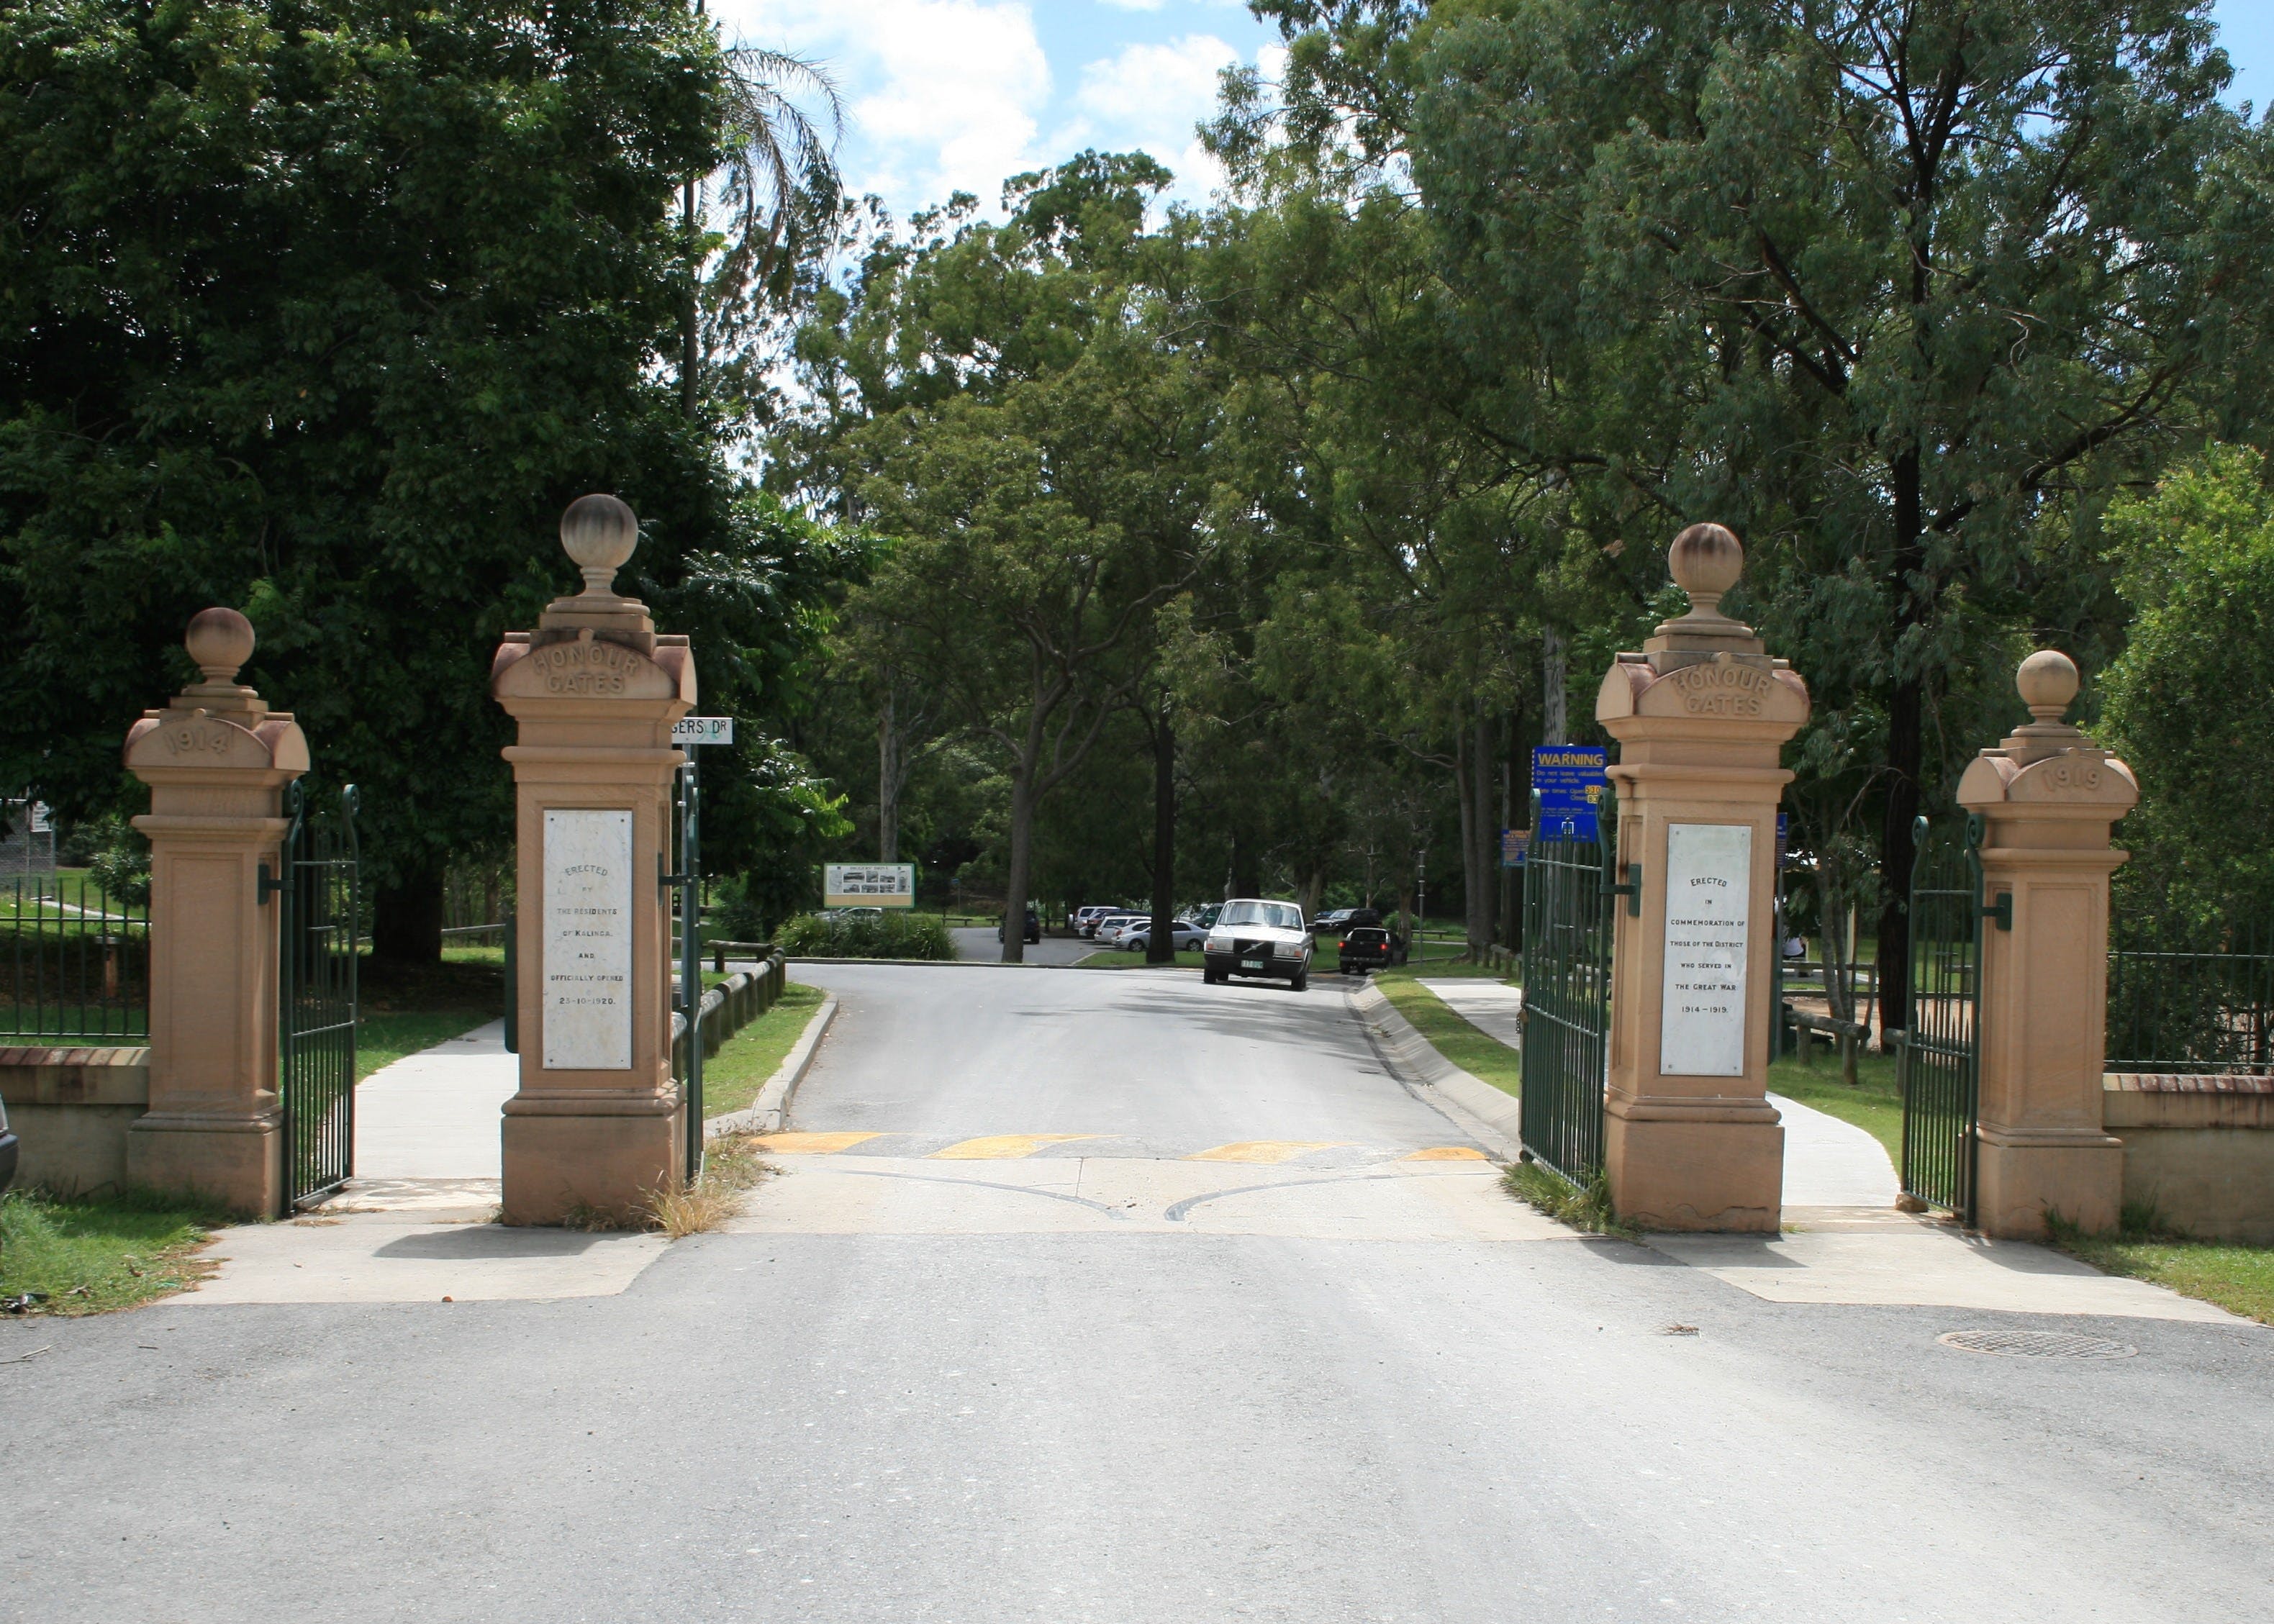 Kalinga Park Memorial